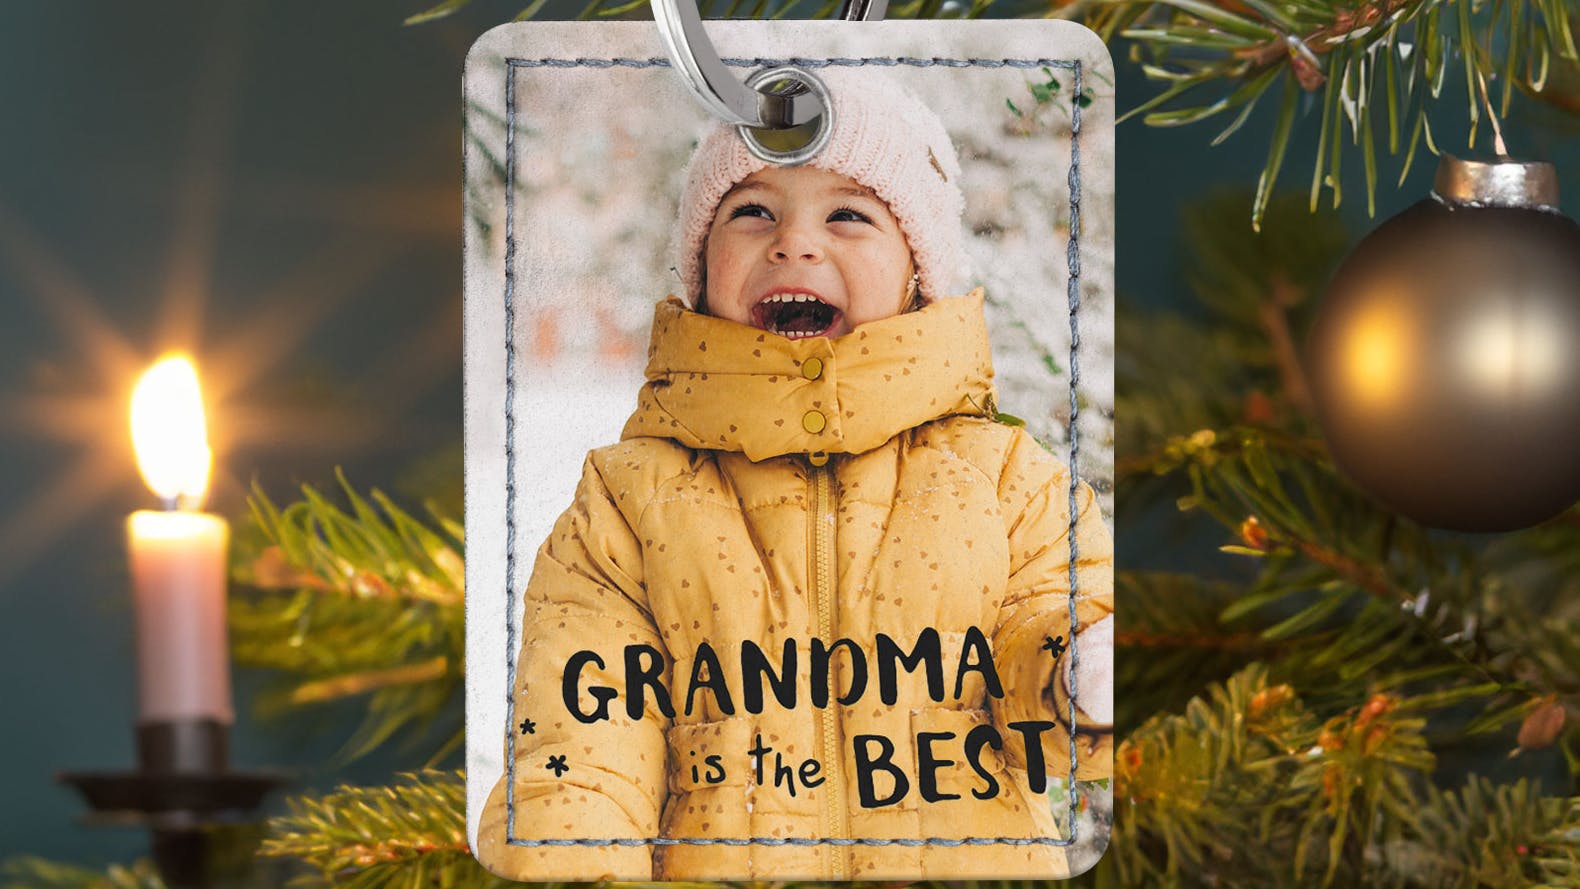 Schlüsselanhänger mit einem kleinen Mädchen und der Aufschrift "Grandma is the Best" am Weihnachtsbaum